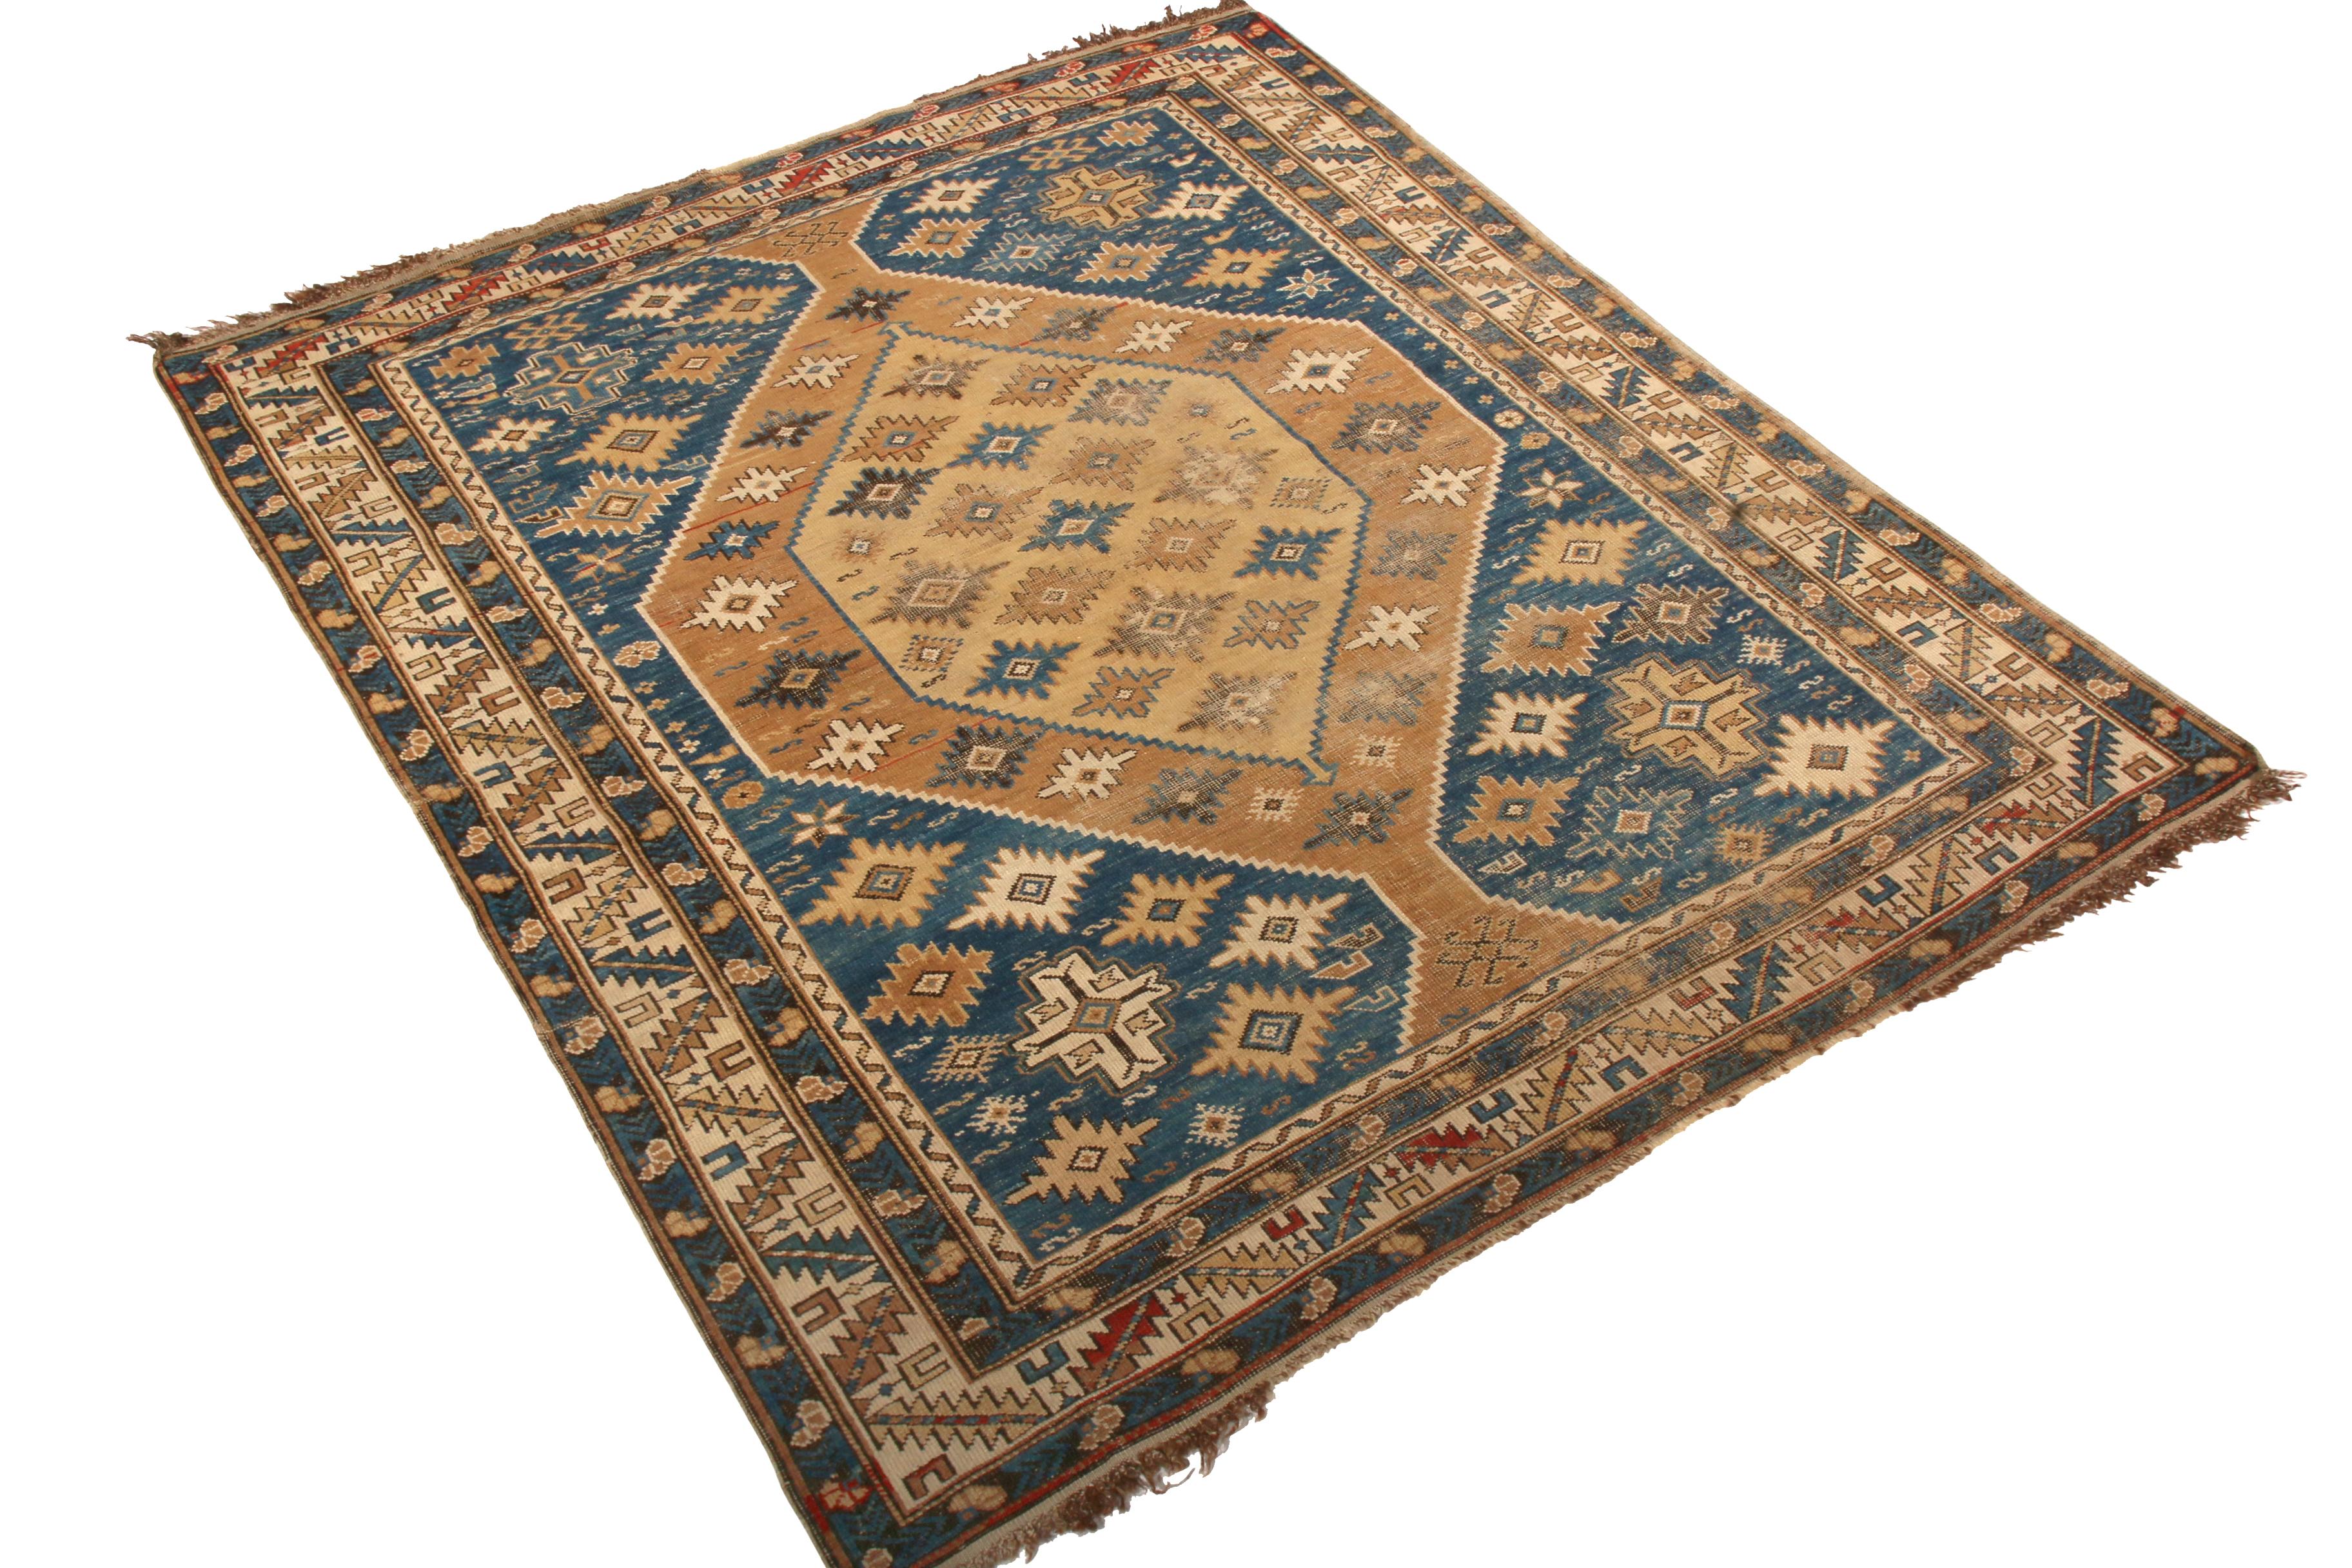 Dieser antike Kuba-Teppich wurde zwischen 1910 und 1920 in Wolle handgeknüpft und stammt aus Russland. Die traditionellen Farbtöne dieser altehrwürdigen Teppichfamilie - ein Spiel aus sattem Beigebraun und abgewetztem Blau, das die sorgfältige